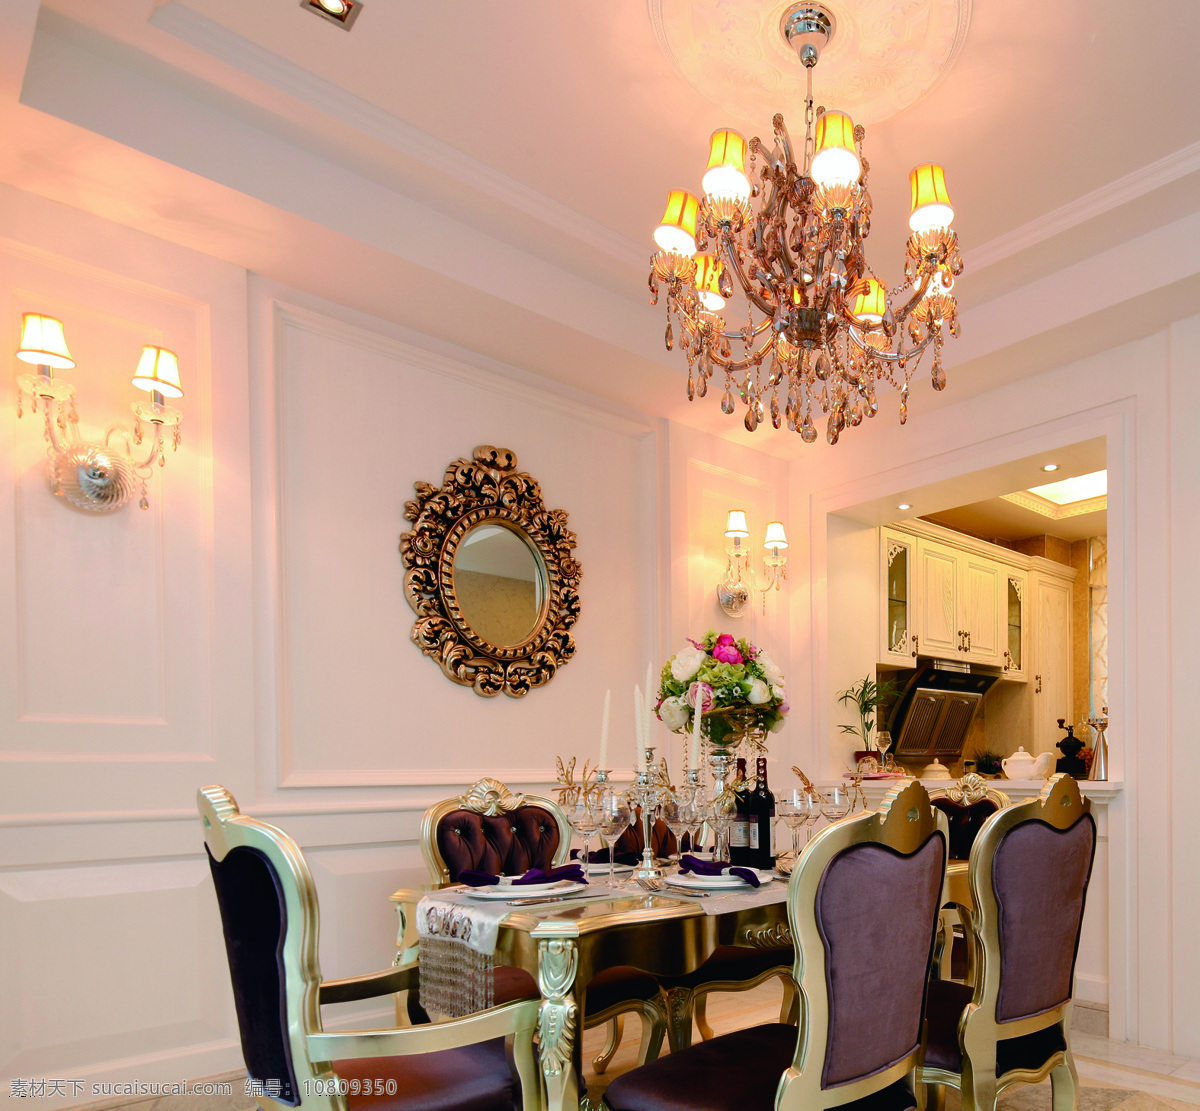 欧式 餐厅 壁灯 装修 效果图 壁画 长方形餐桌 个性吊灯 桌椅